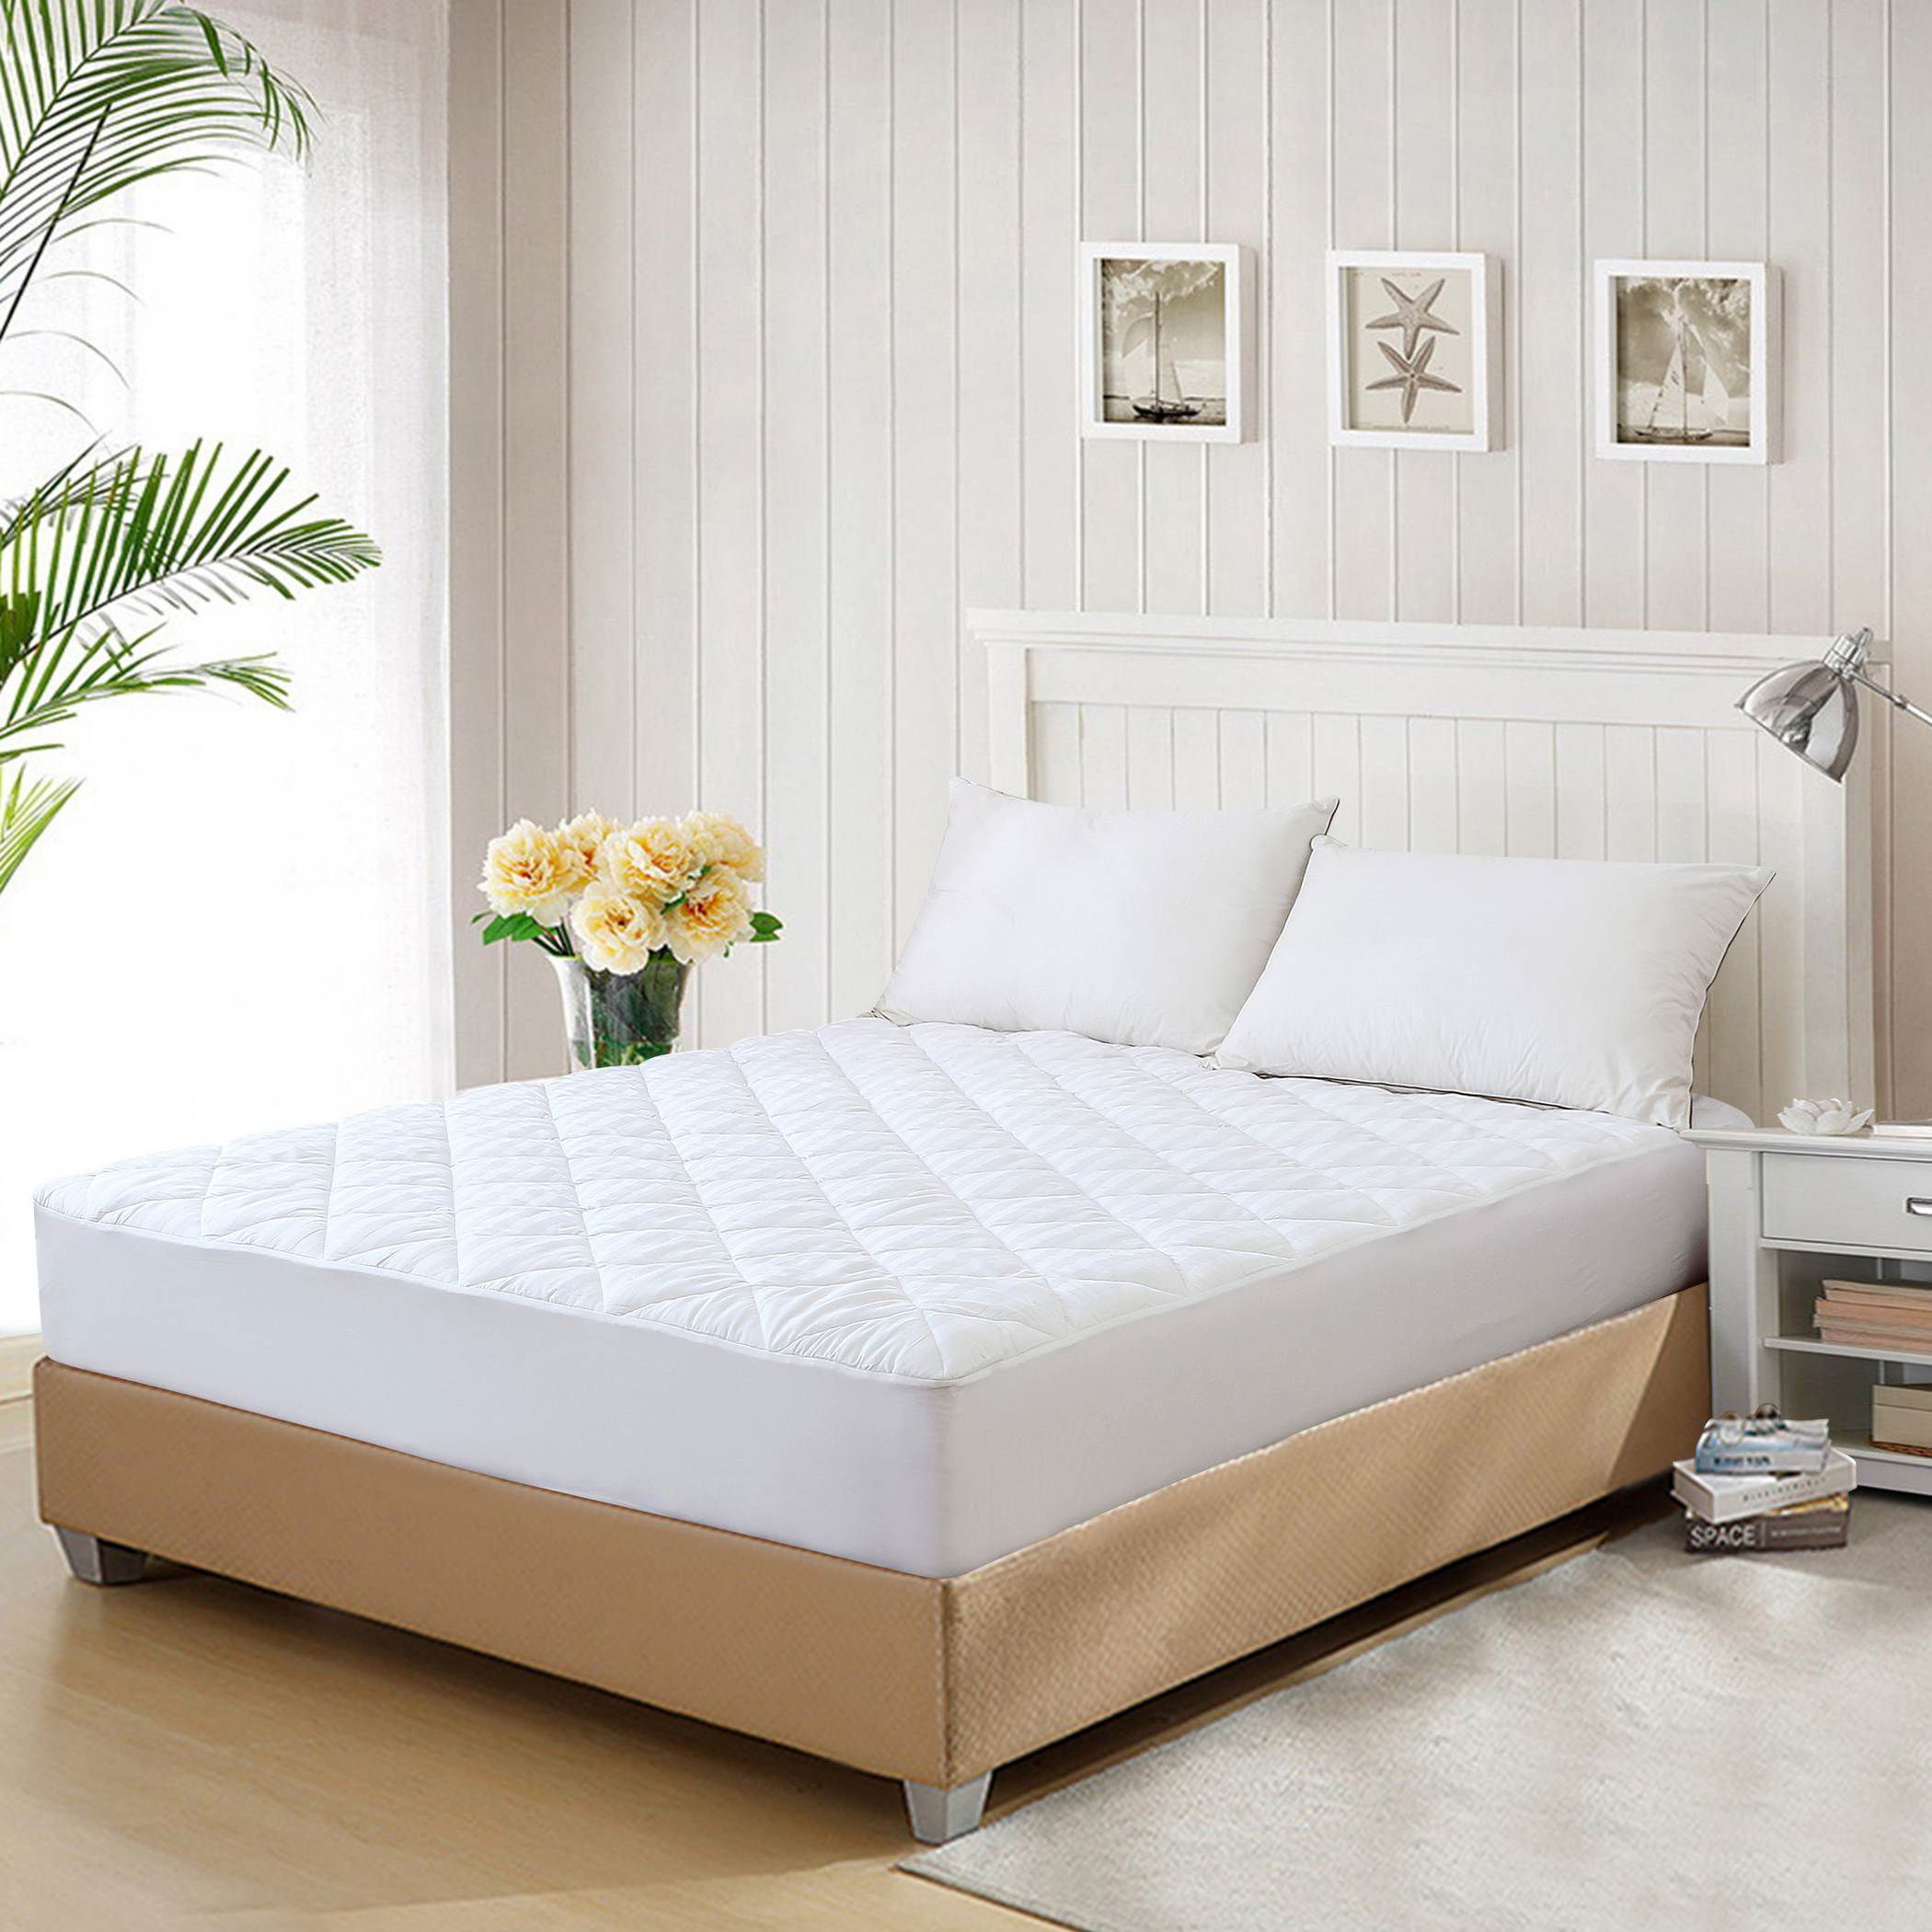 Bedsheet Bed Mattress Pad Cover Home Bedroom Indoor Furniture